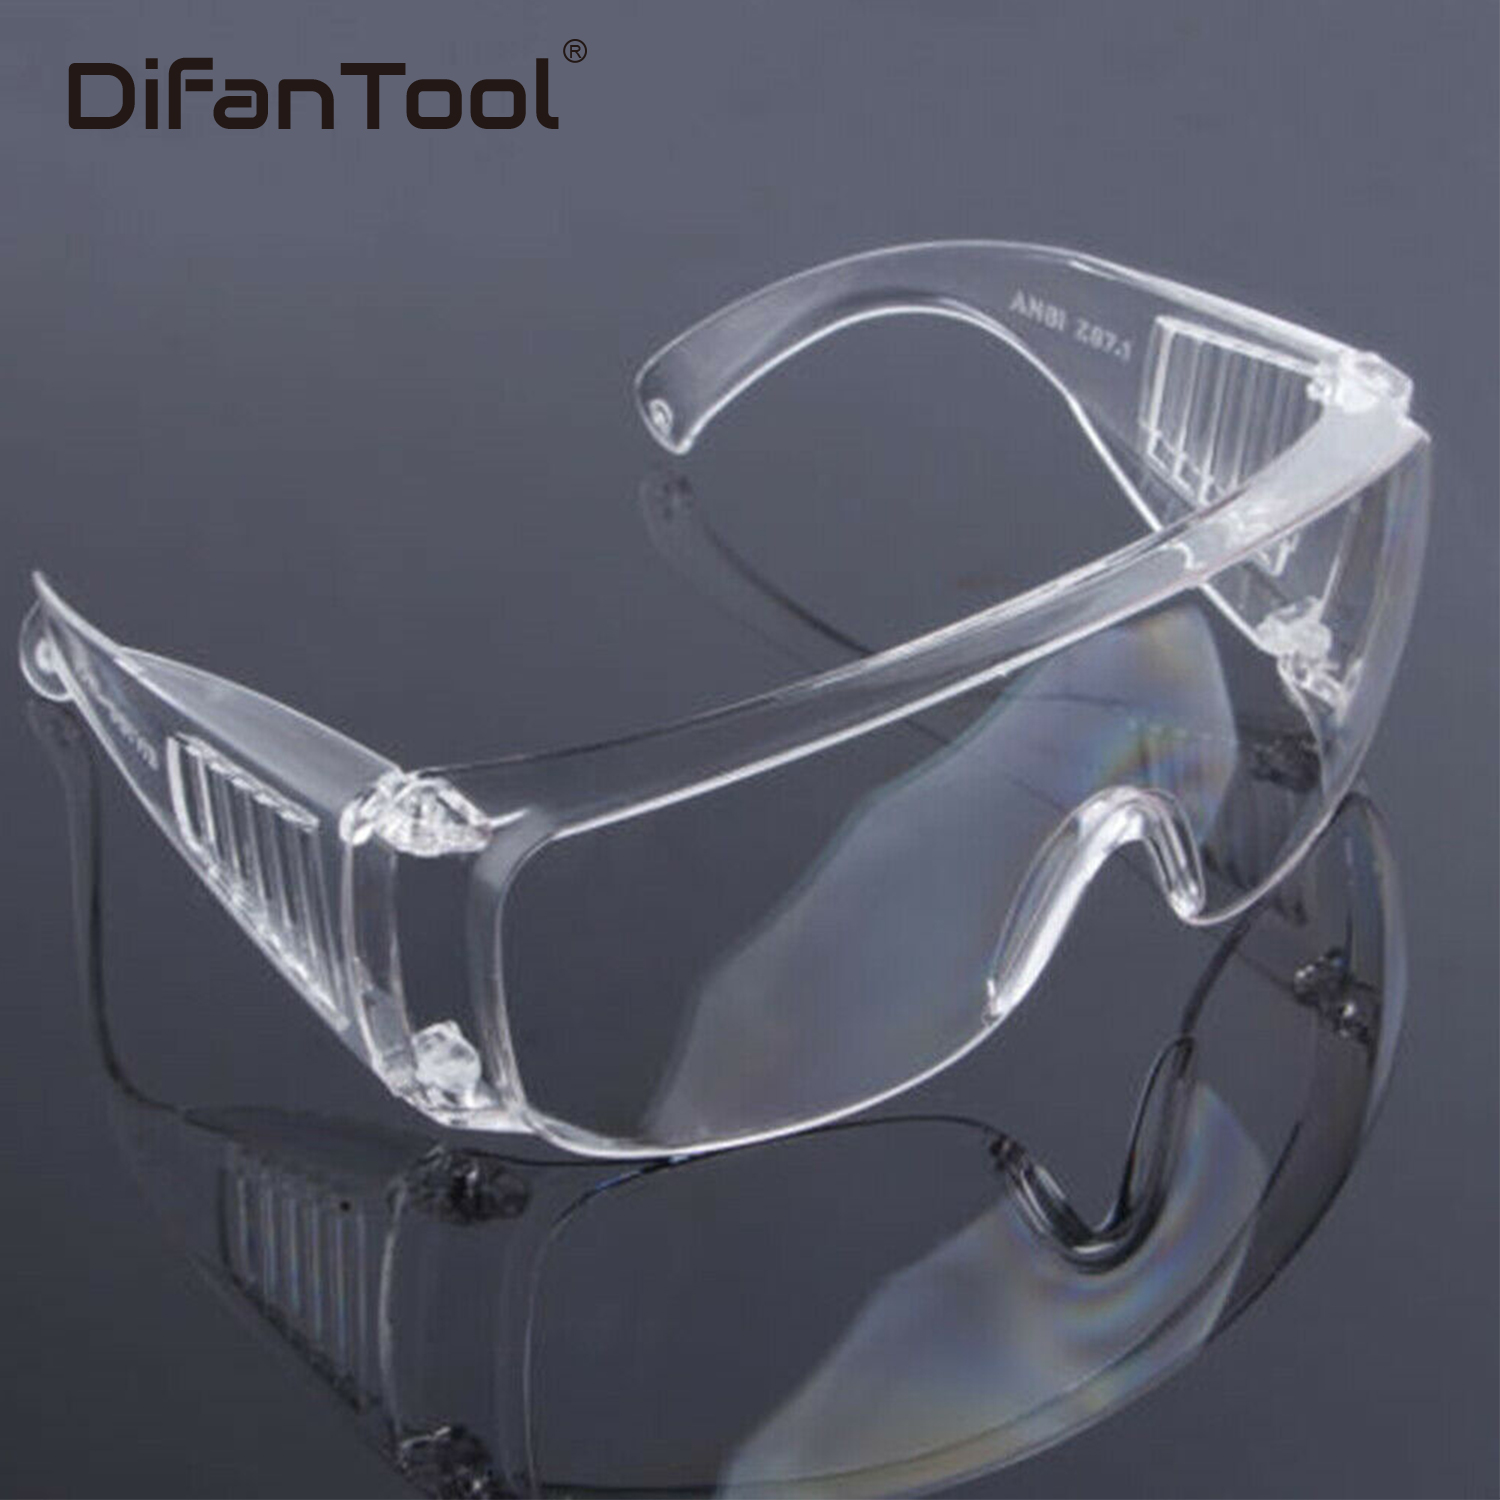 Защитные очки требования. Очки защитные spectacles cr01, transparent. Очк304 (о-13011) очки защитные открытые (прозрачные). Очки защитные clean+safe оранжевые HB-s03aor. Очки hogies стоматологические.